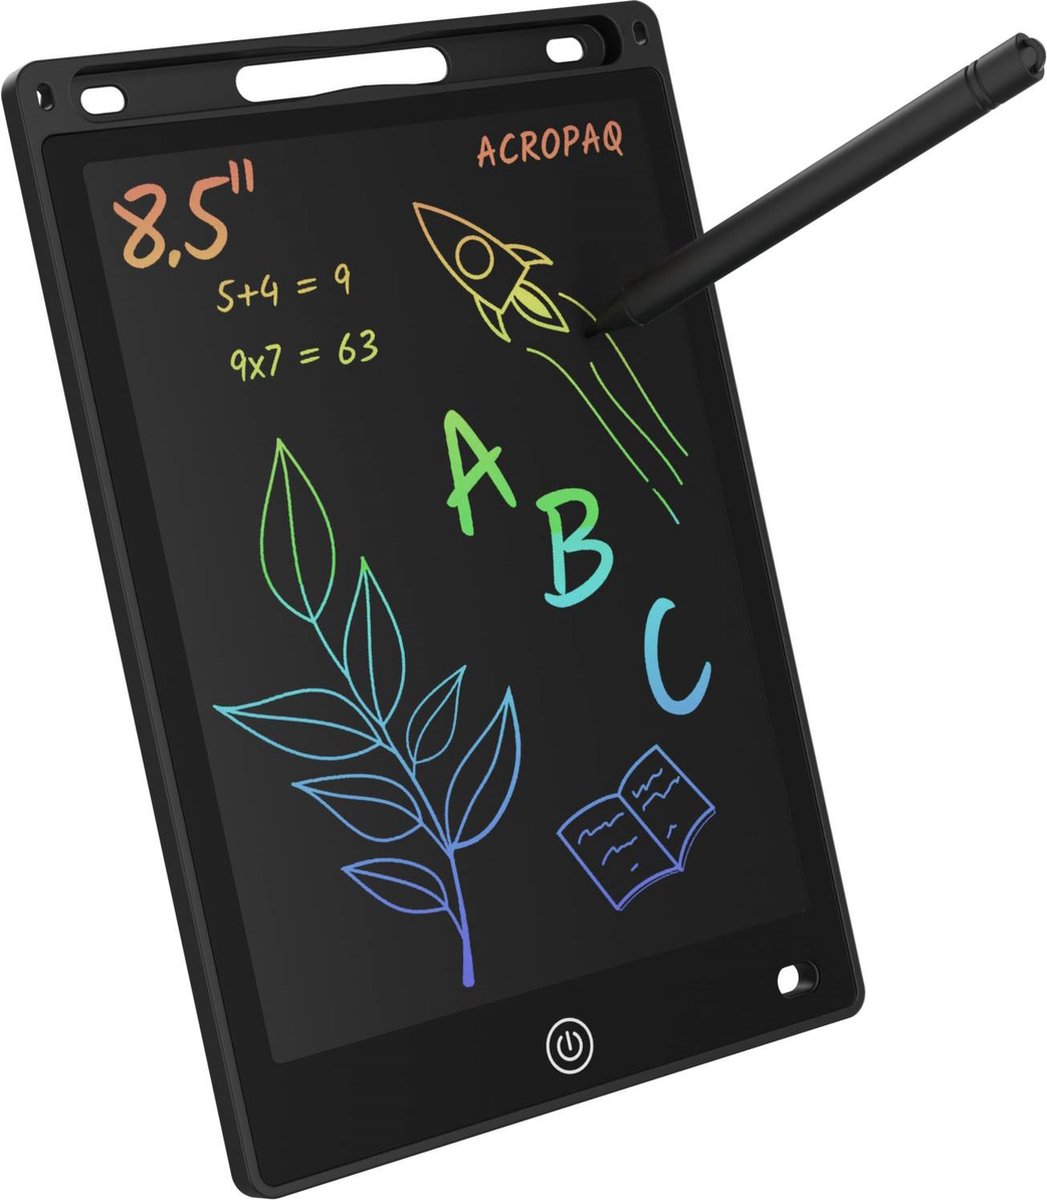 Tekentablet kinderen - 8,5 inch, Zwart met kleurenscherm - Drawing tablet, Grafische tablet, LCD tekentablet - ACROPAQ